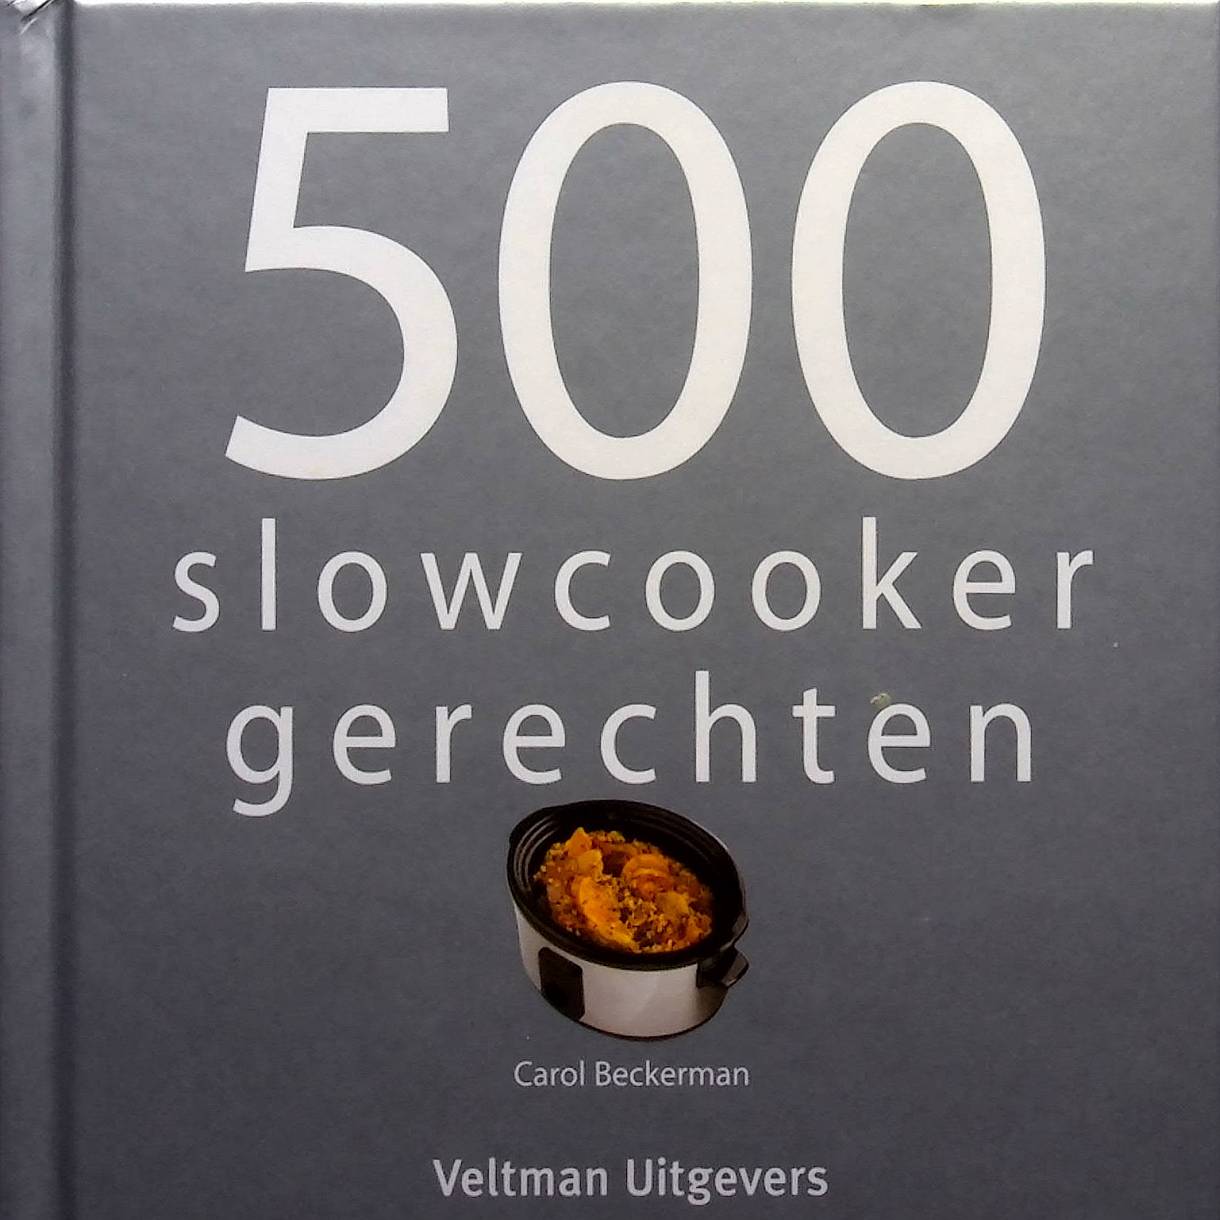 500 slowcooker gerechten - Carol Beckerman (14de druk 2021)